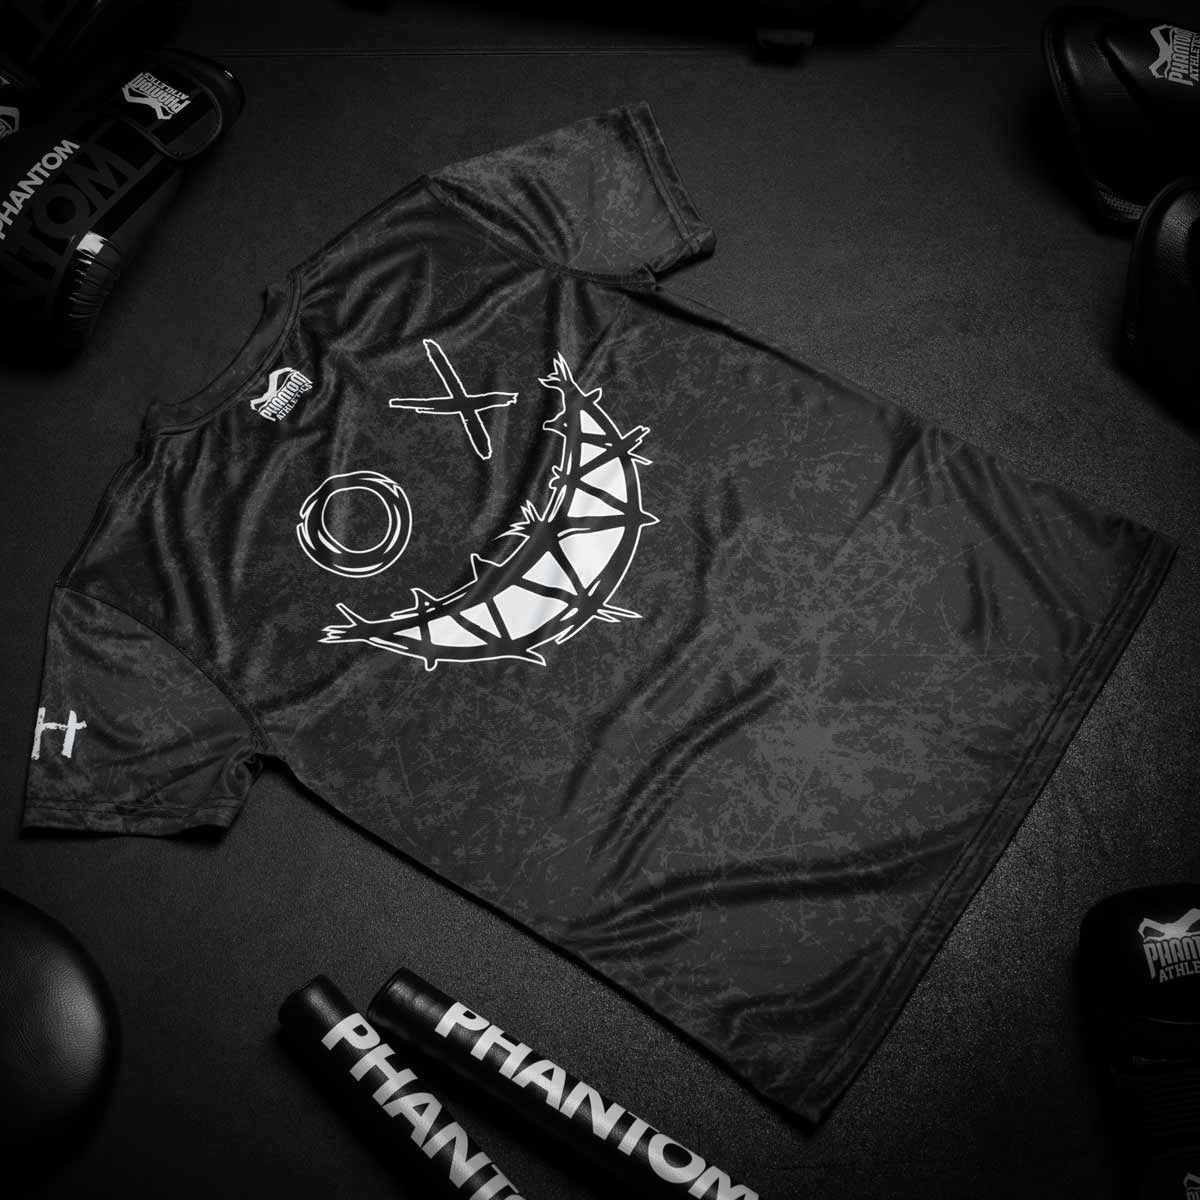 Phantom EVO Trainingsshirt für Kampfsport. Mit Smiley Serious Grafik am Rücken. Hochwertiger Sublimationsdruck für eine lange Lebensdauer im Kampfsporttraining.